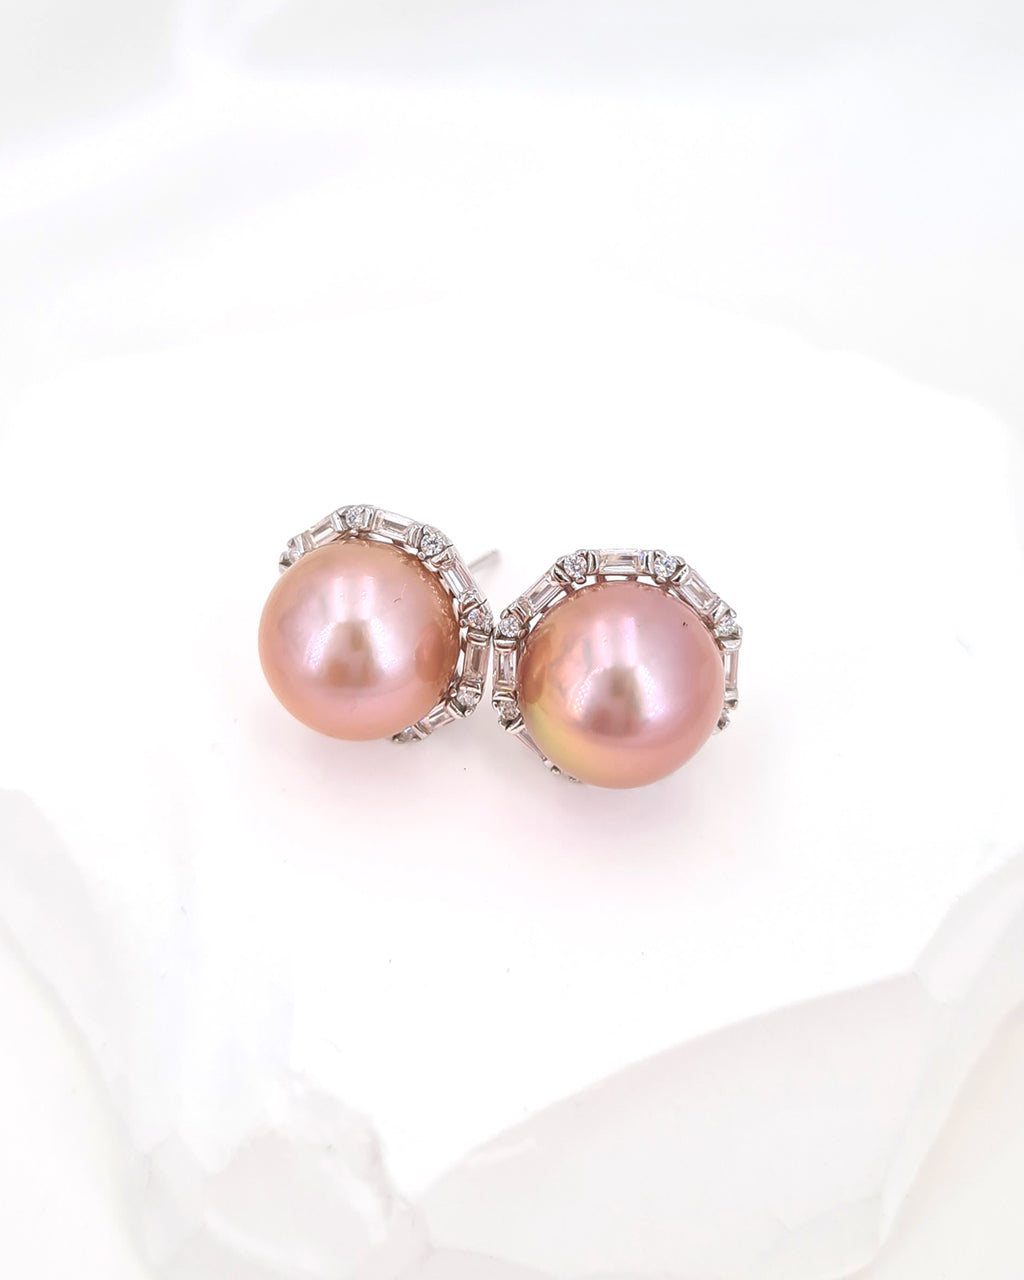 Edison Pearl Stud Earrings - Soft Pink Freshwater Pearl Stud Earrings handmade in Singapore